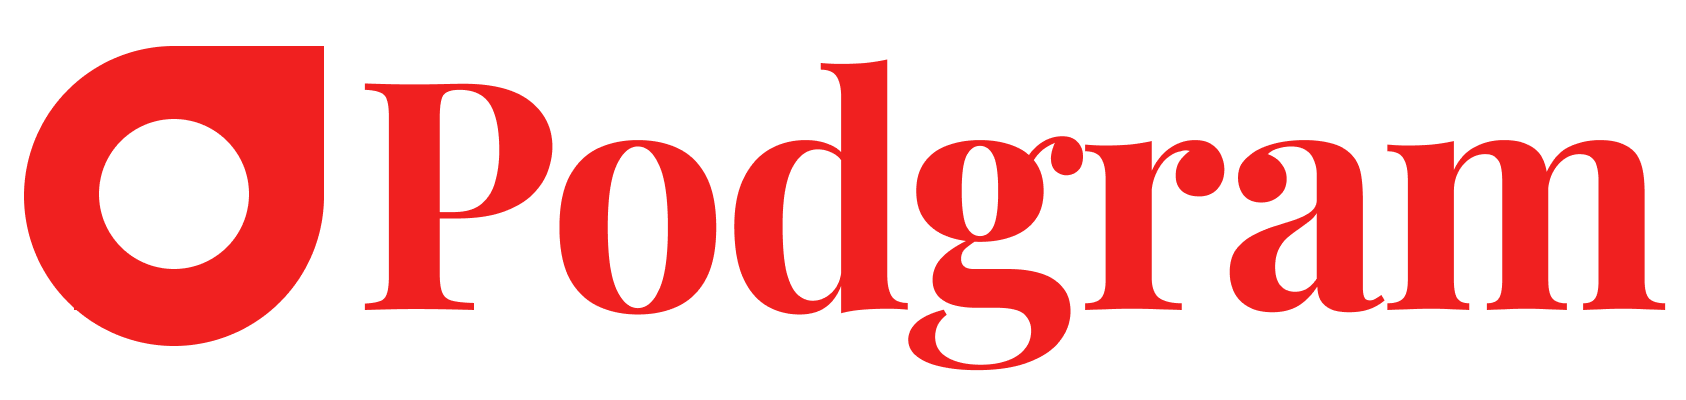 Podgram Logo